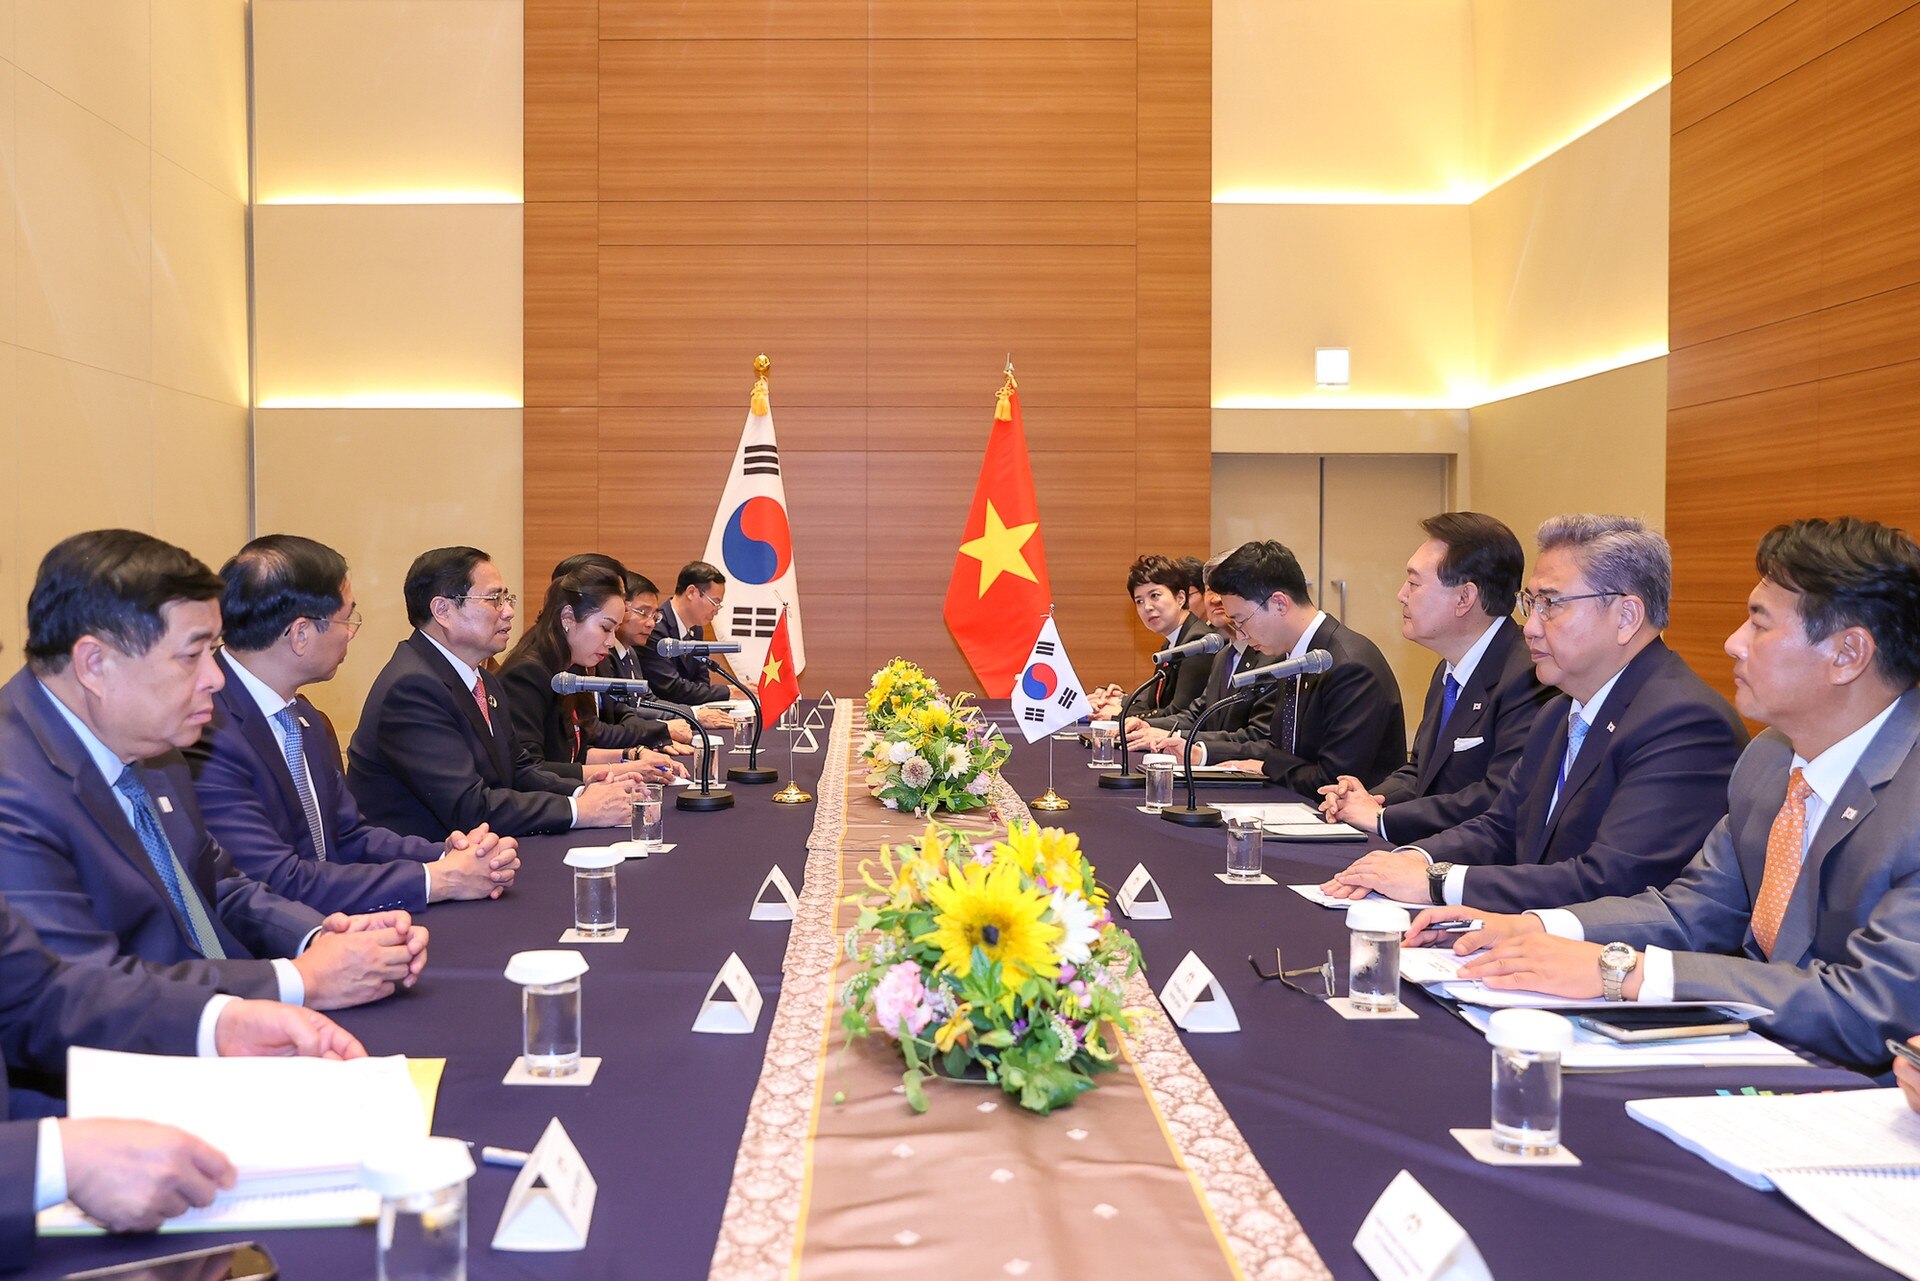 رئيس الوزراء فام مينه تشينه يلتقي برئيس جمهورية كوريا بمناسبة انعقاد القمة الموسعة لمجموعة السبع - الصورة 7.